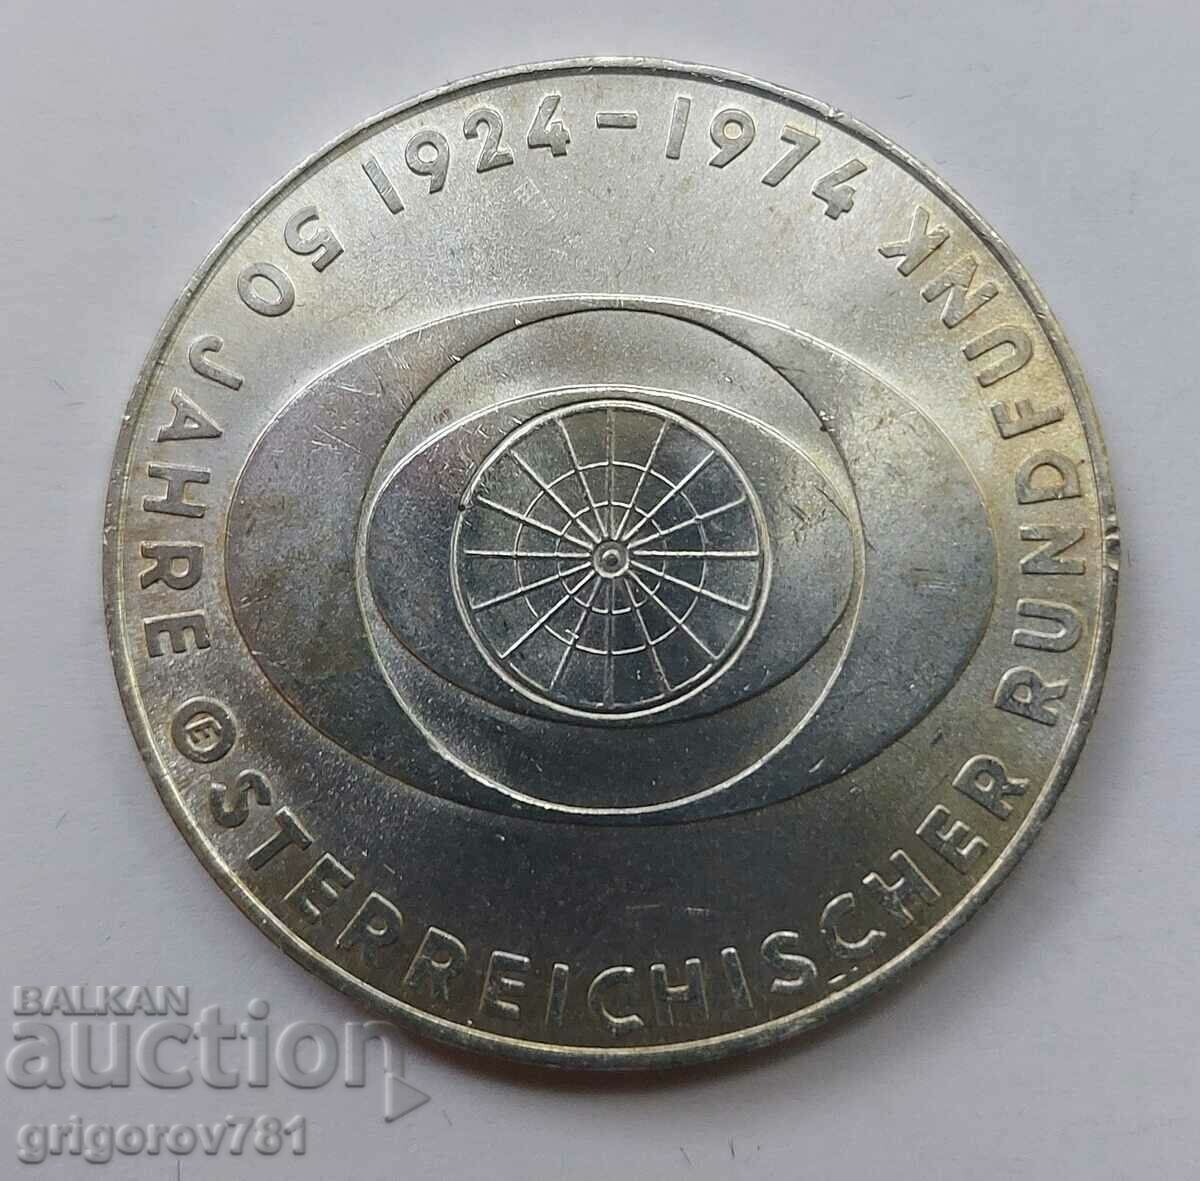 50 Shilling Silver Αυστρία 1974 - Ασημένιο νόμισμα #19